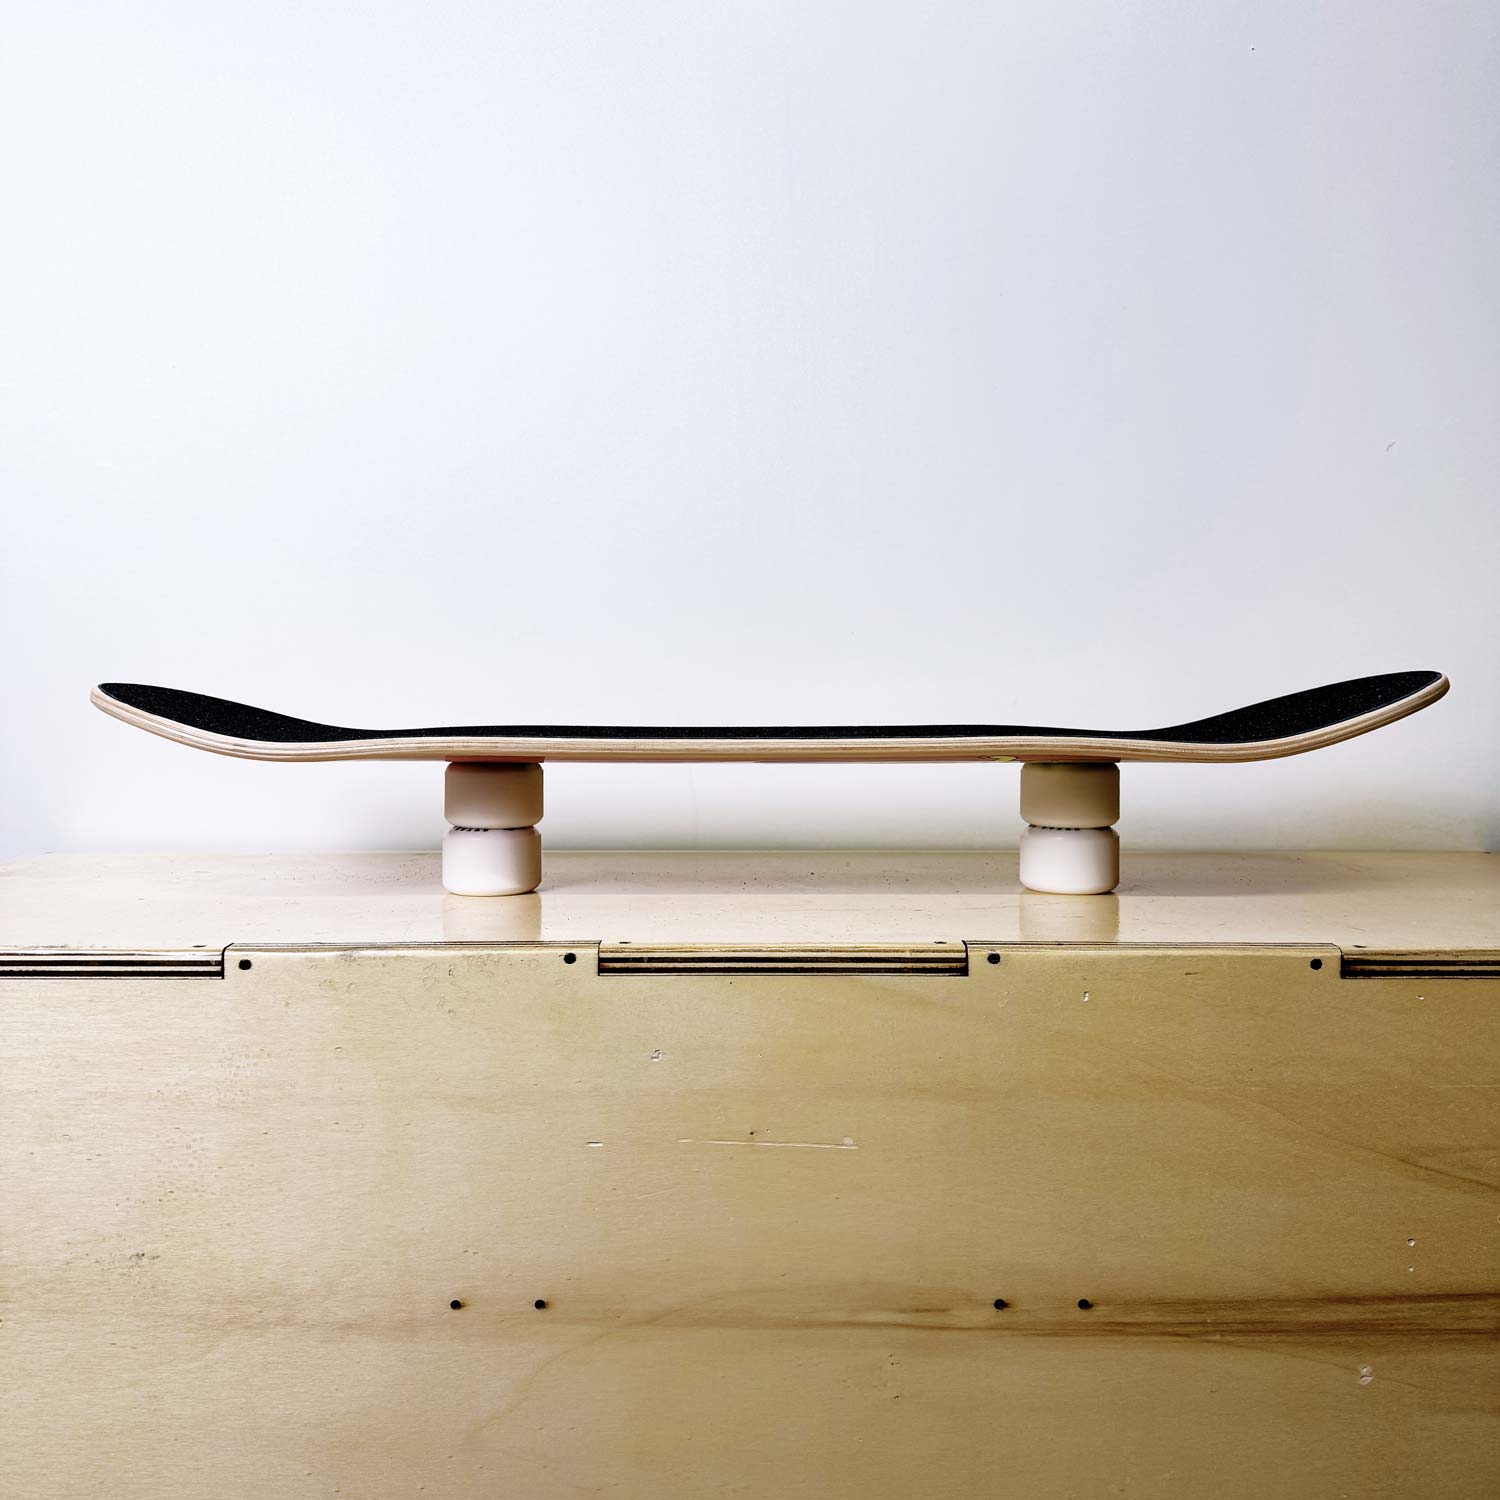 tavola skateboardo blank liscia senza grafica, solo legno e grip - prodotto da algal board